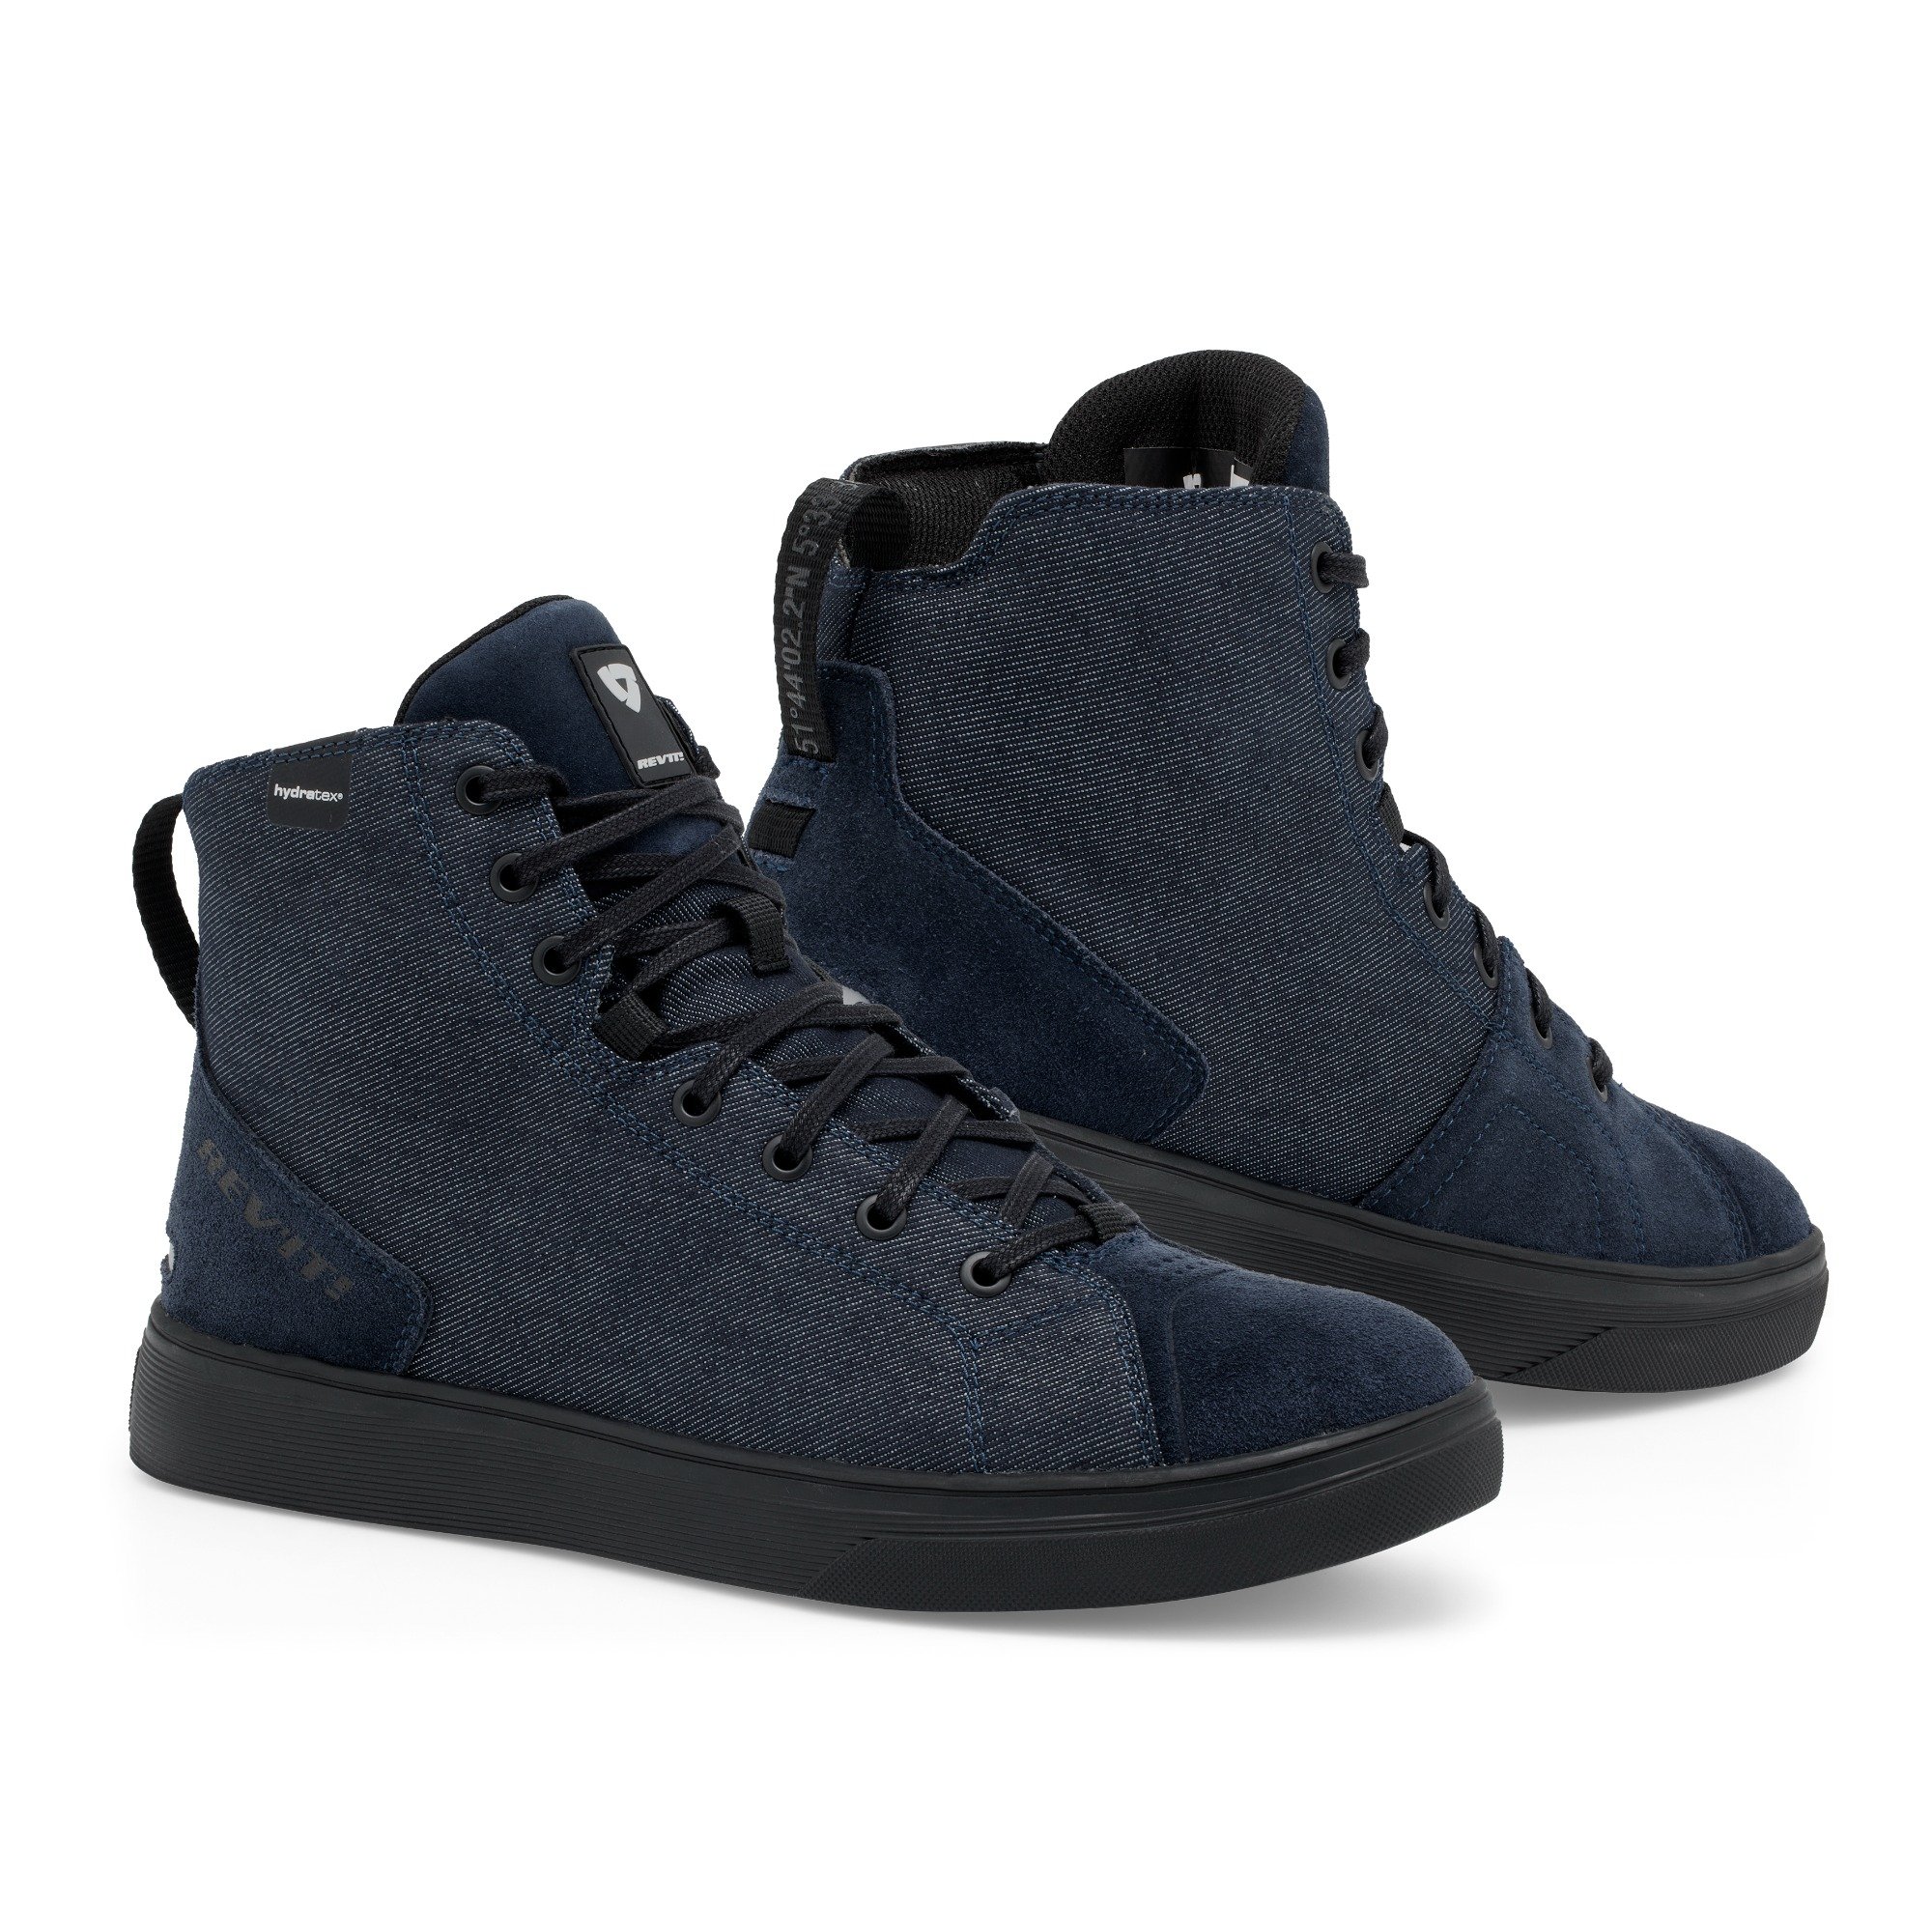 Image of REV'IT! Delta H2O Shoes Dark Blue Black Size 41 EN